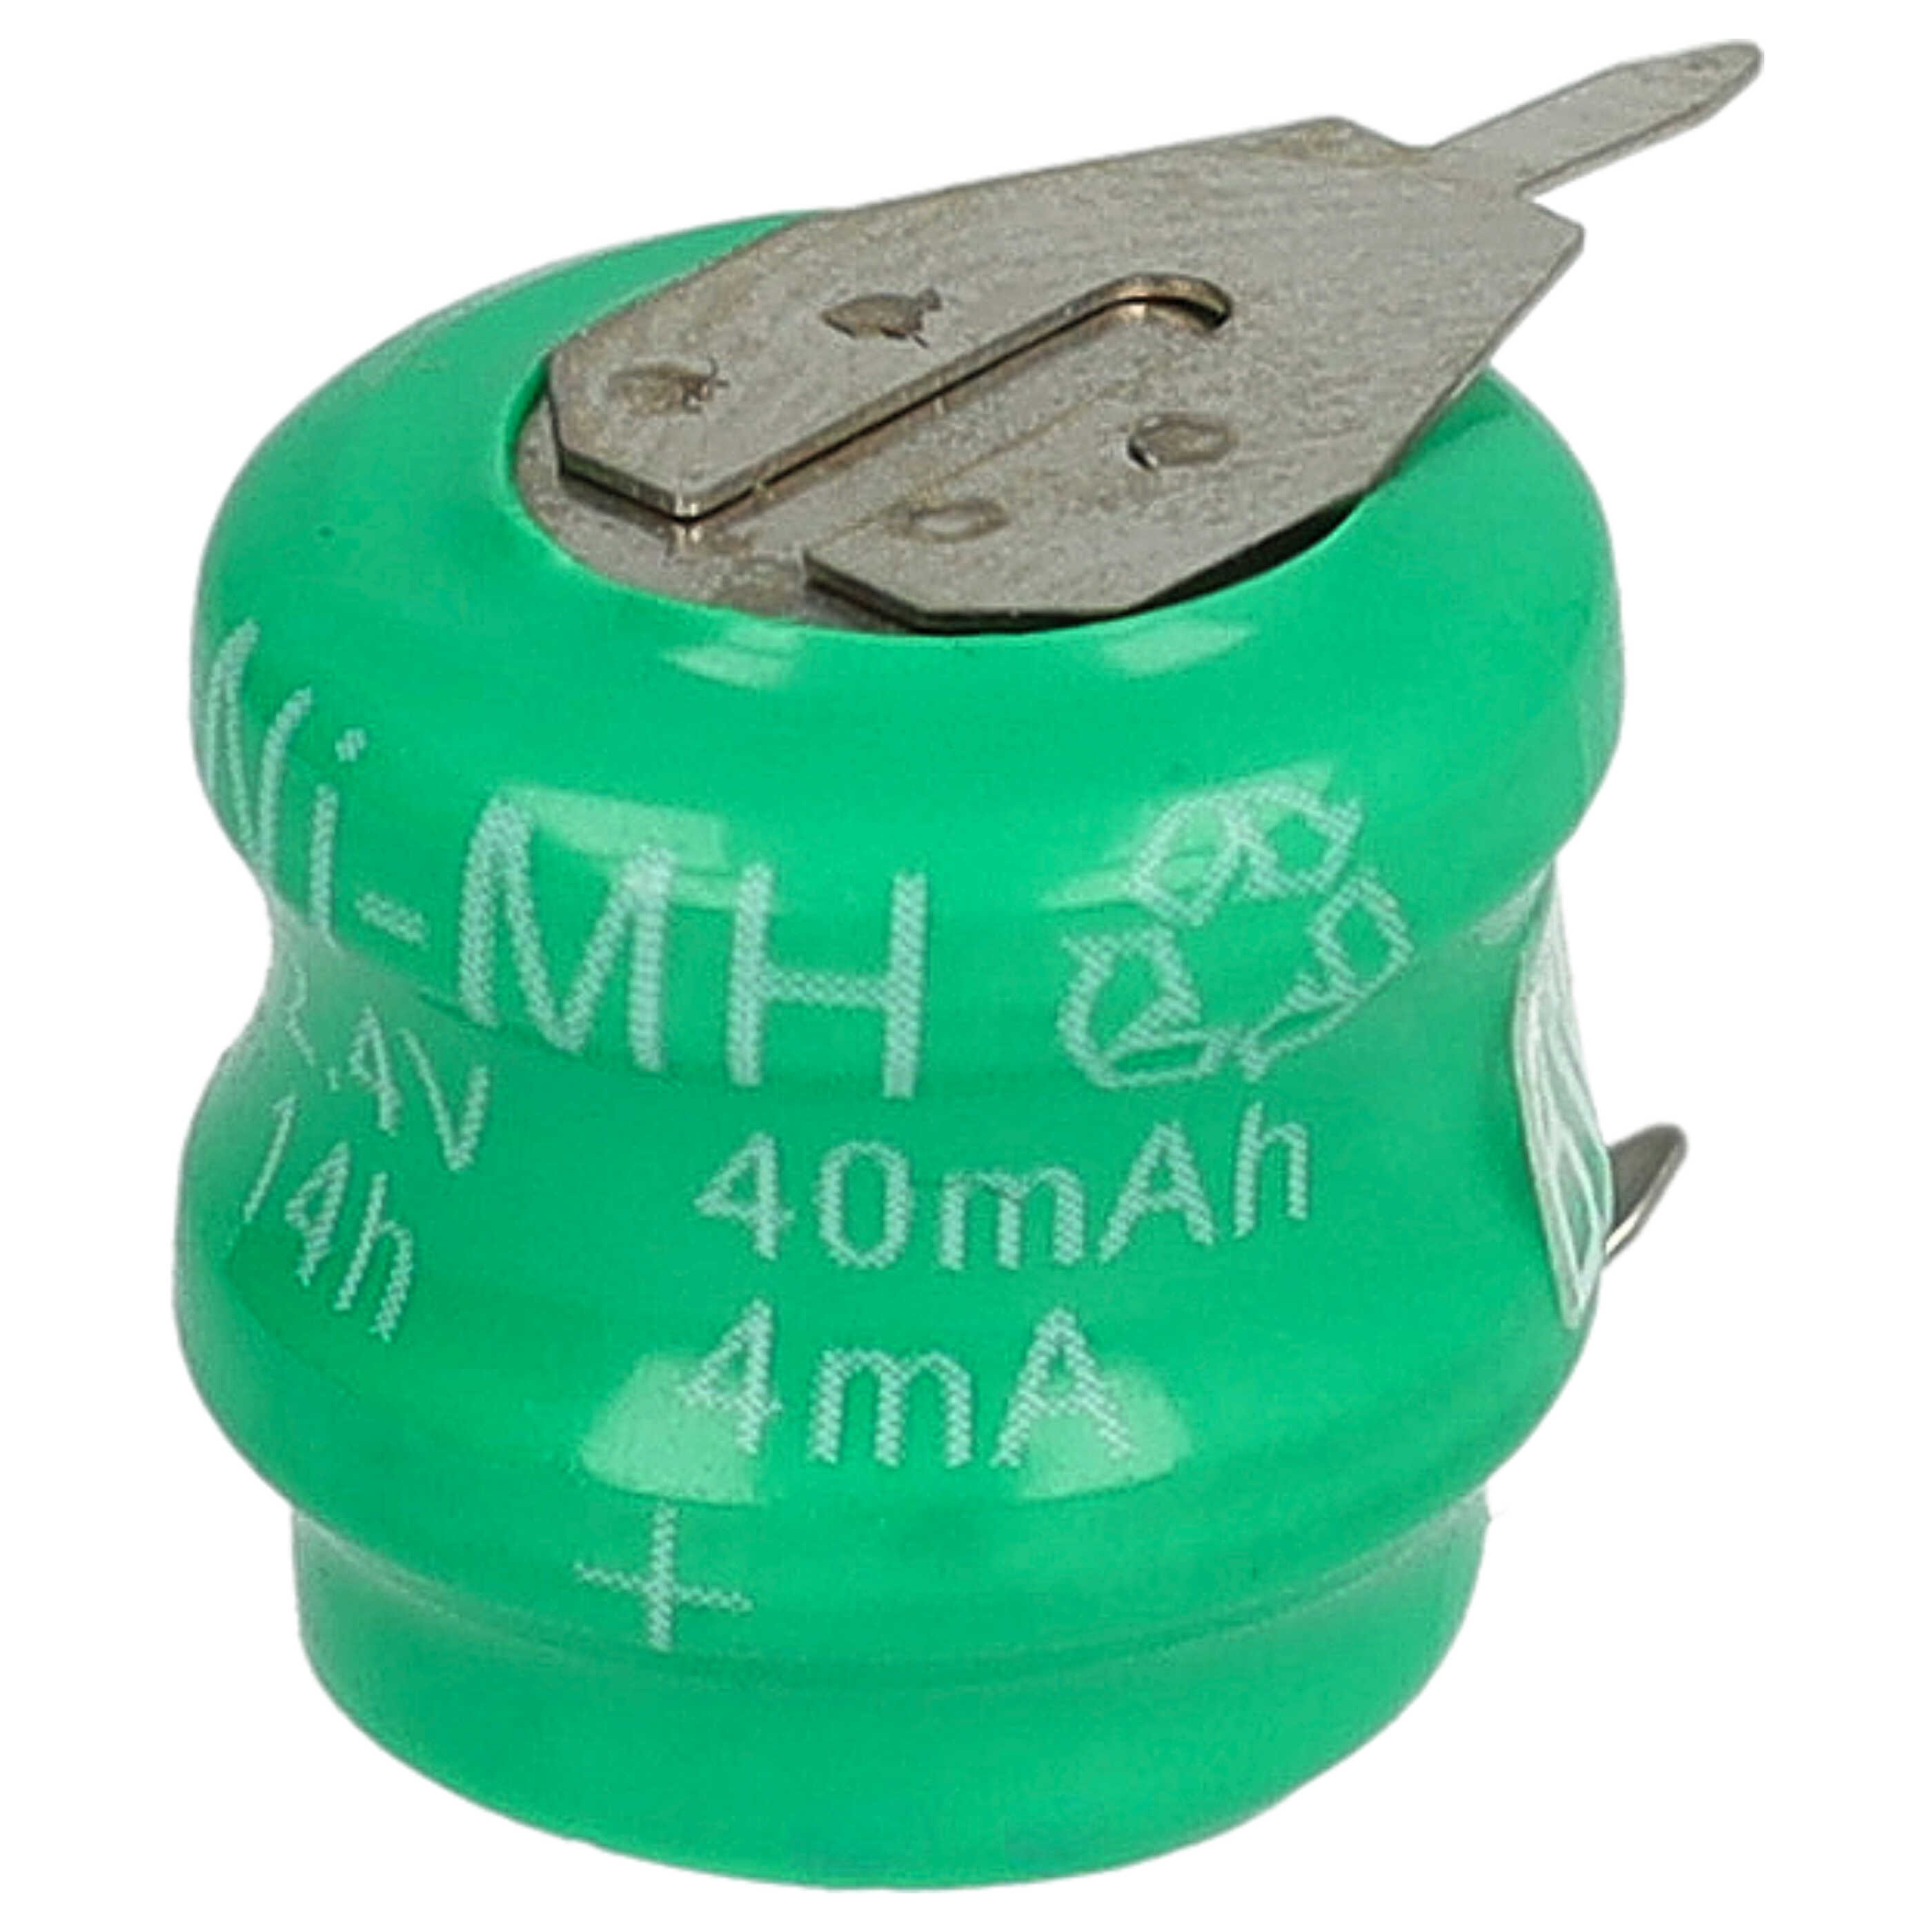 Akumulator guzikowy (2x ogniwo) typ V40H 2 pin do modeli, lamp solarnych itp. zam. V40H - 40 mAh 2,4 V NiMH